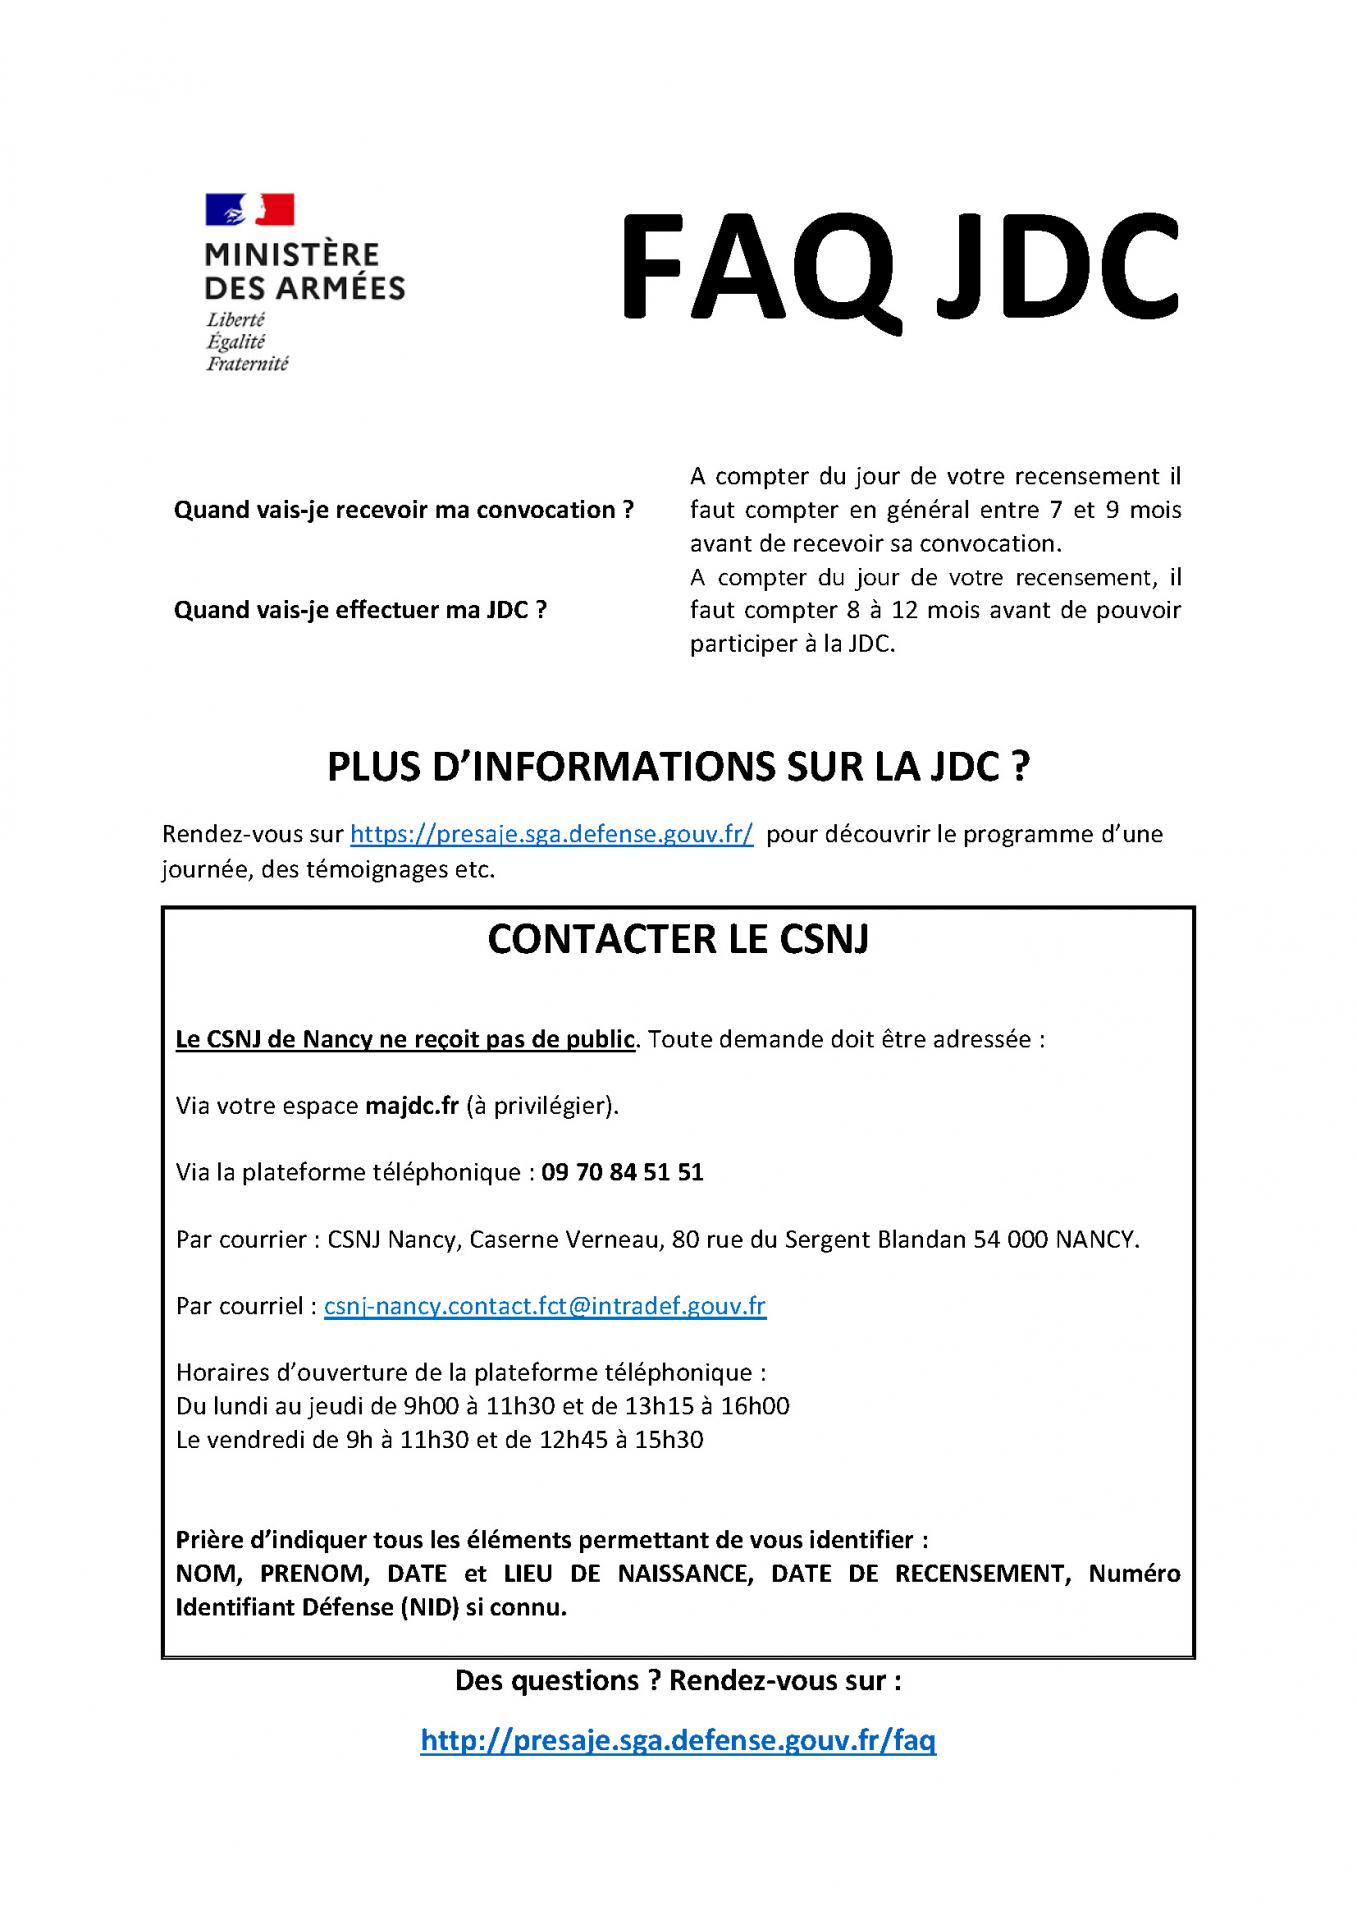 JDC - Informations post-recensement